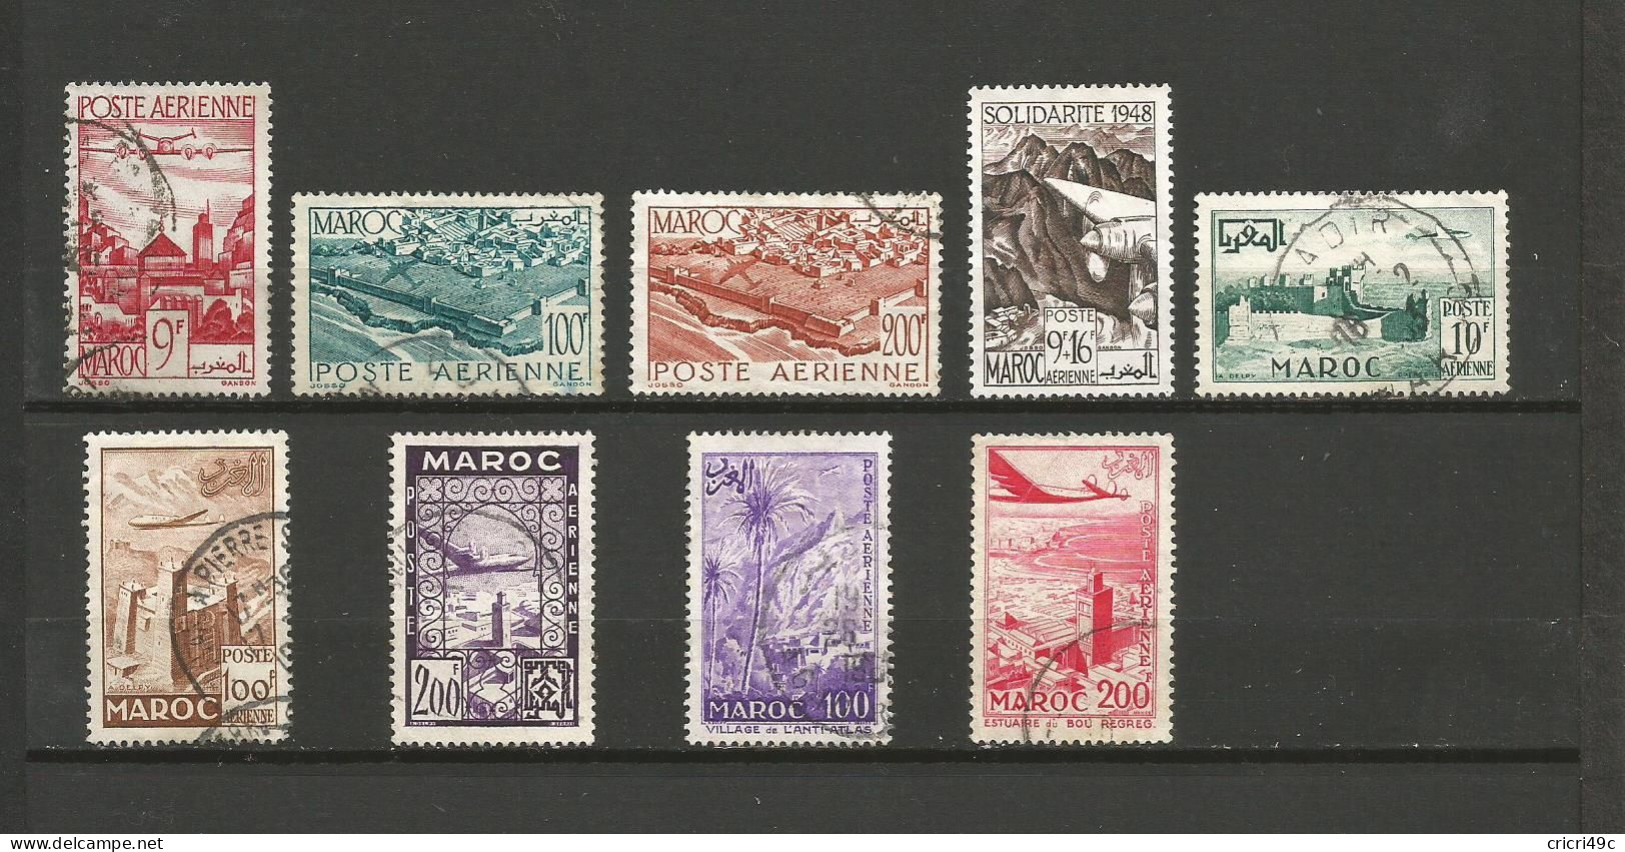 Maroc Poste Aérienne 1 Lot De 9 Timbres Oblitérés De 1947 à 1955  (A9) - Colecciones (sin álbumes)